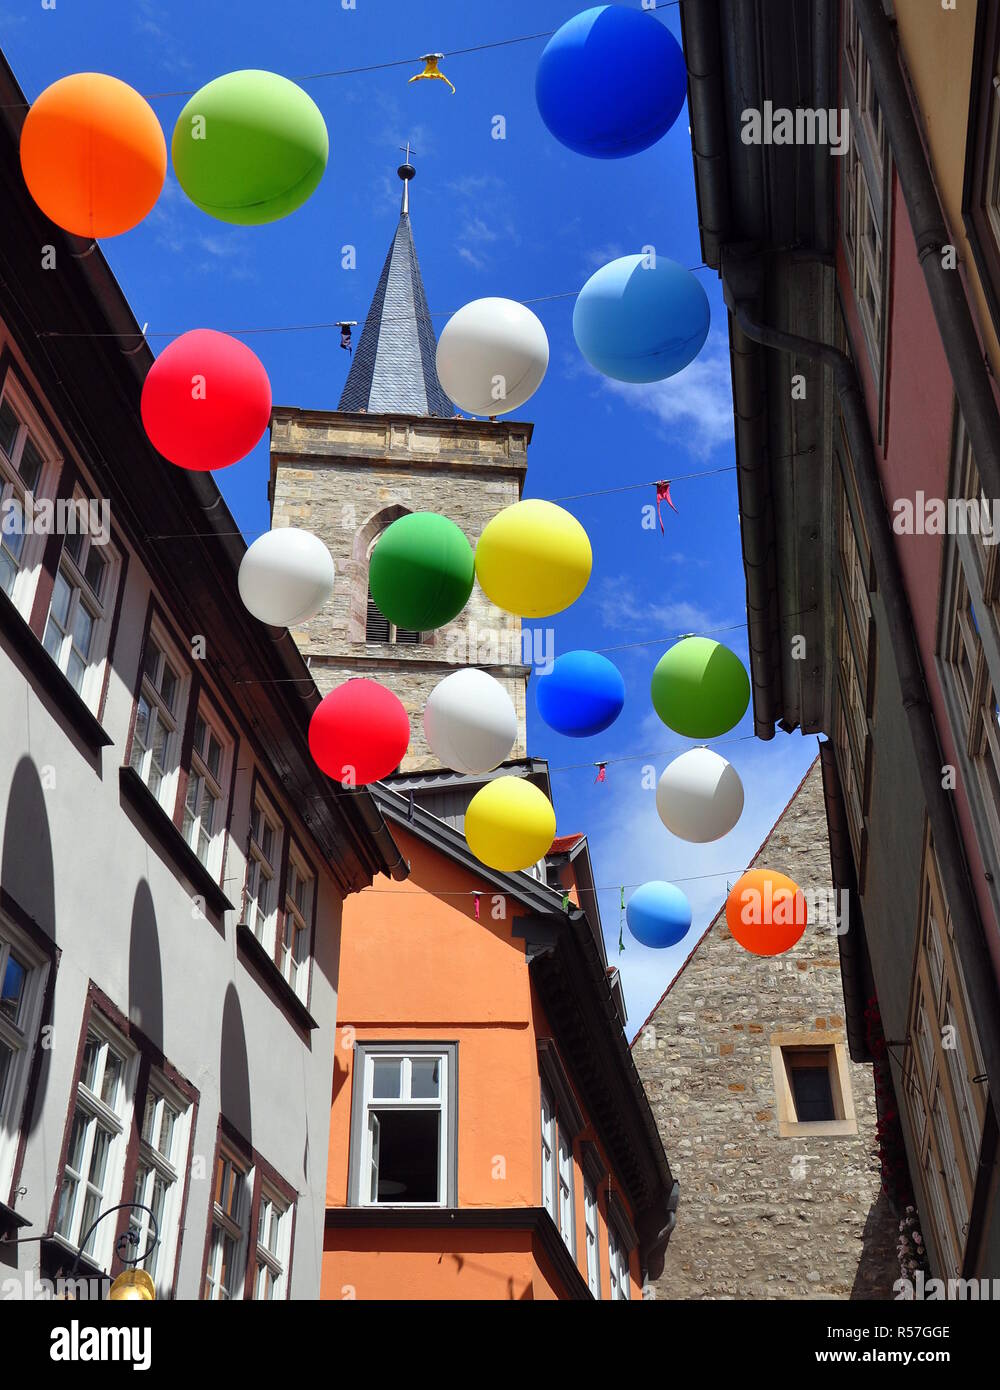 KrÃ¤merbrÃ¼cke histórico, decorado con globos de colores para krÃ¤merbrÃ¼ckenfest Foto de stock